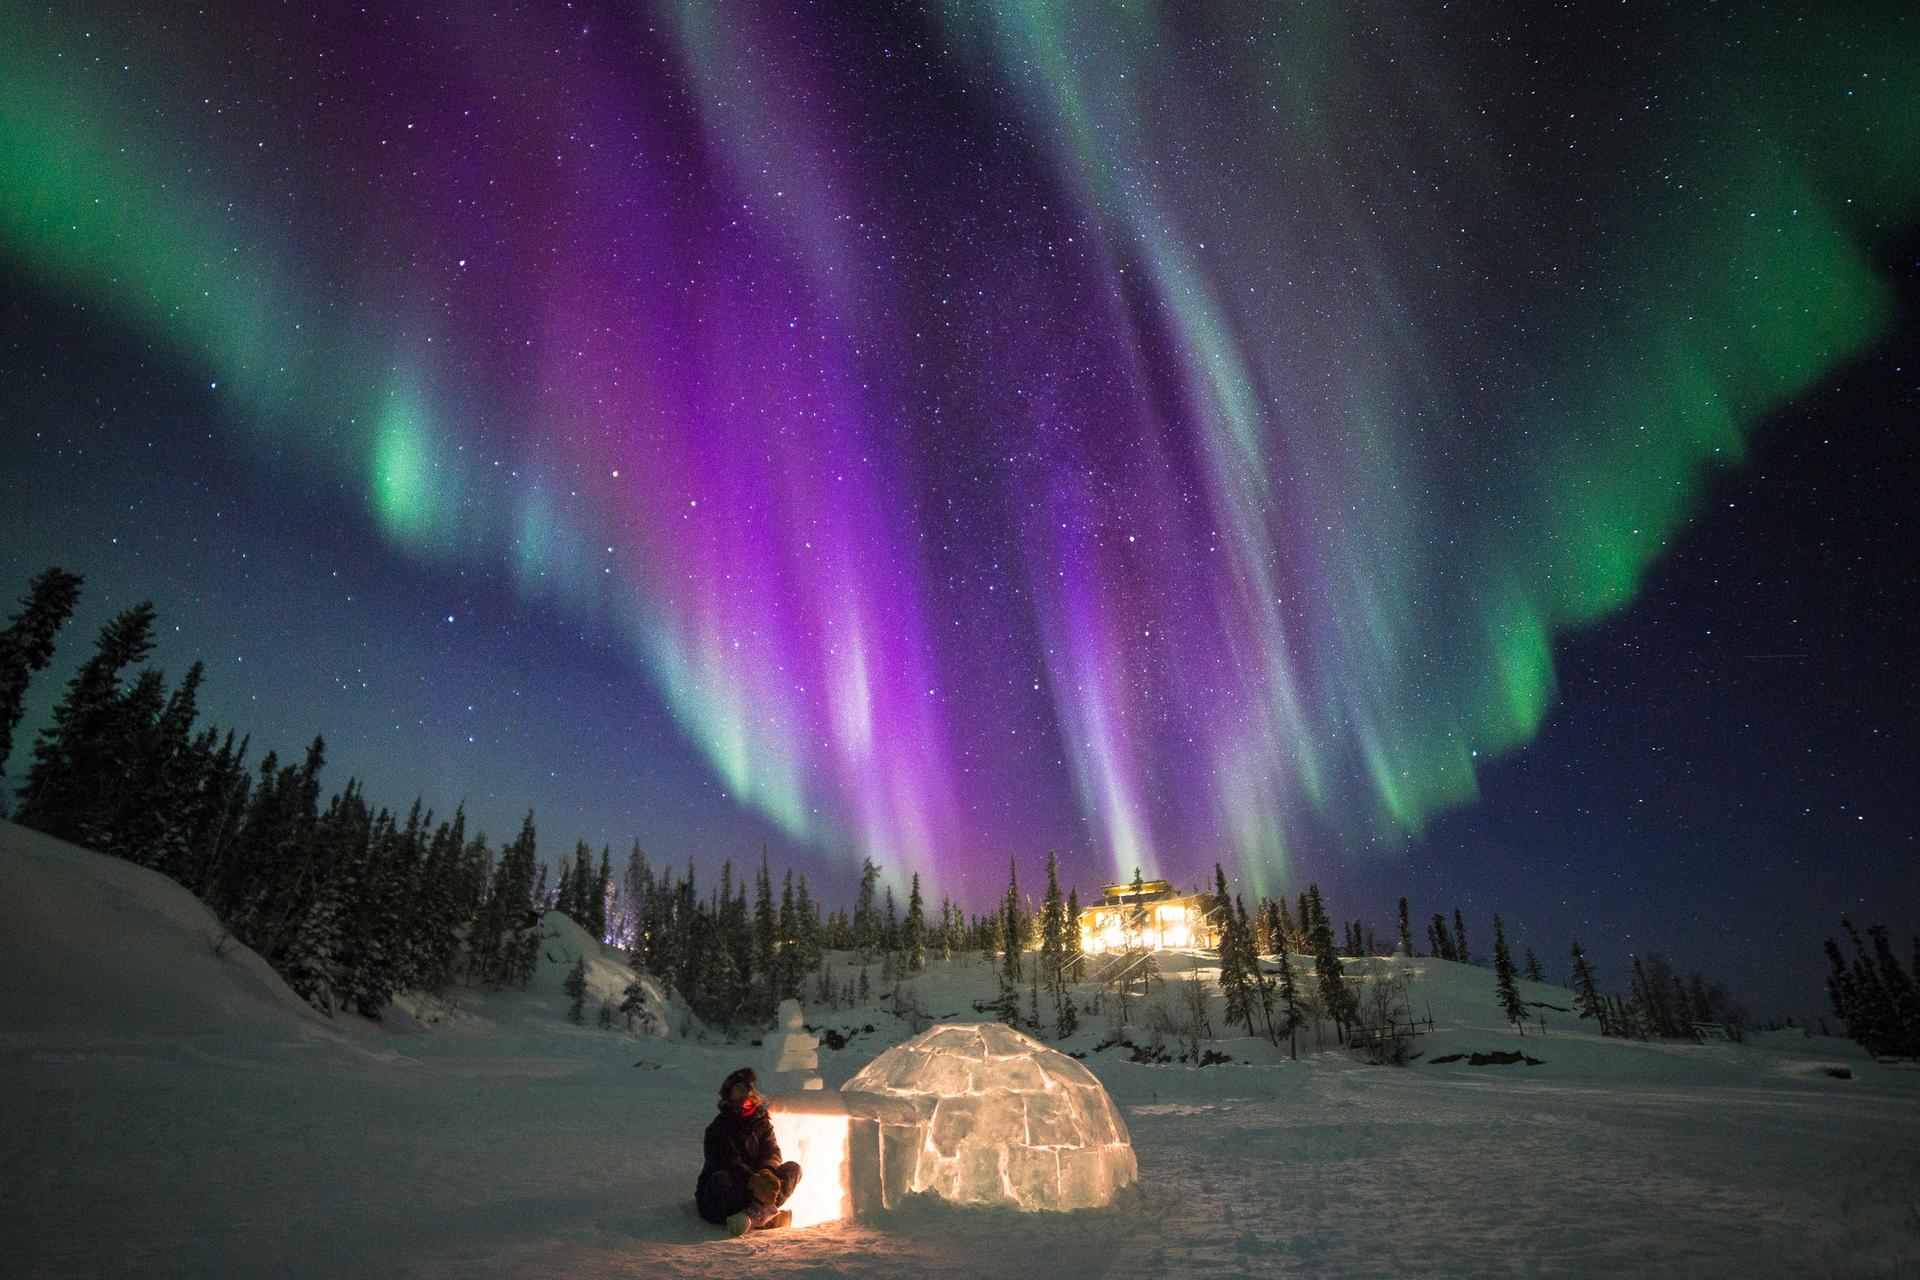 La aurora boreal en Canadá: ¿cuándo podremos verla?